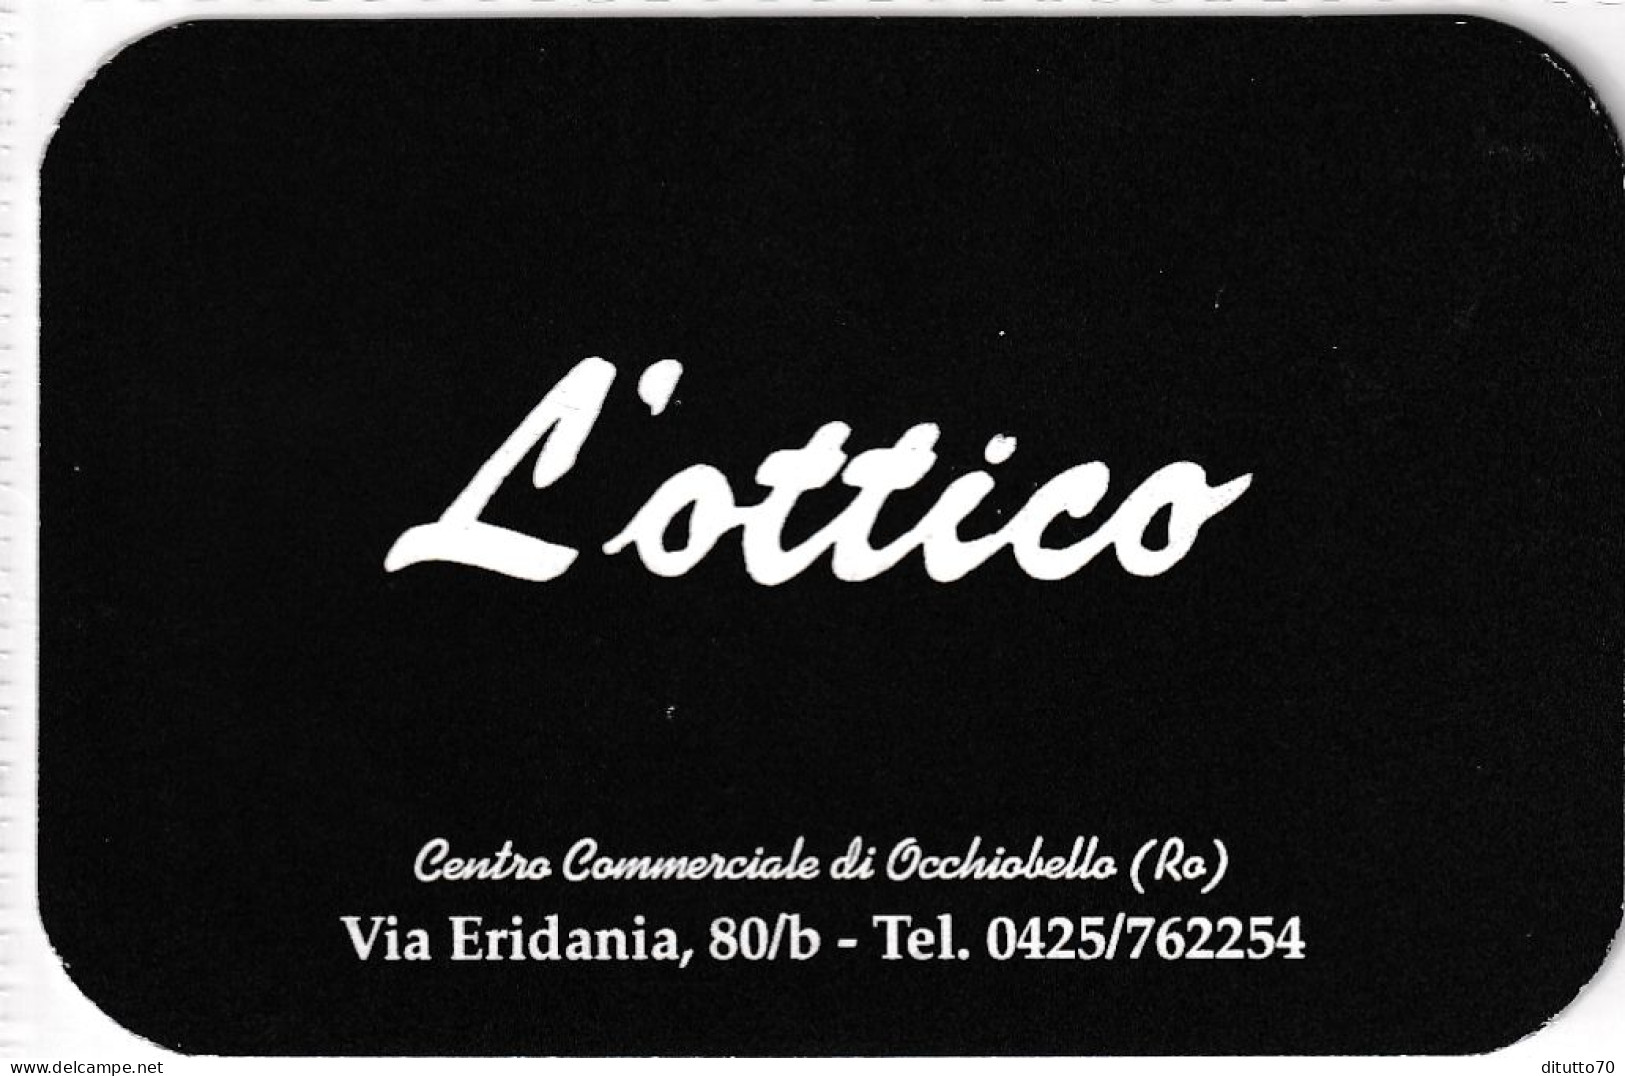 Calendarietto - L'ottico - Rovigo - Anno 1998 - Klein Formaat: 1991-00